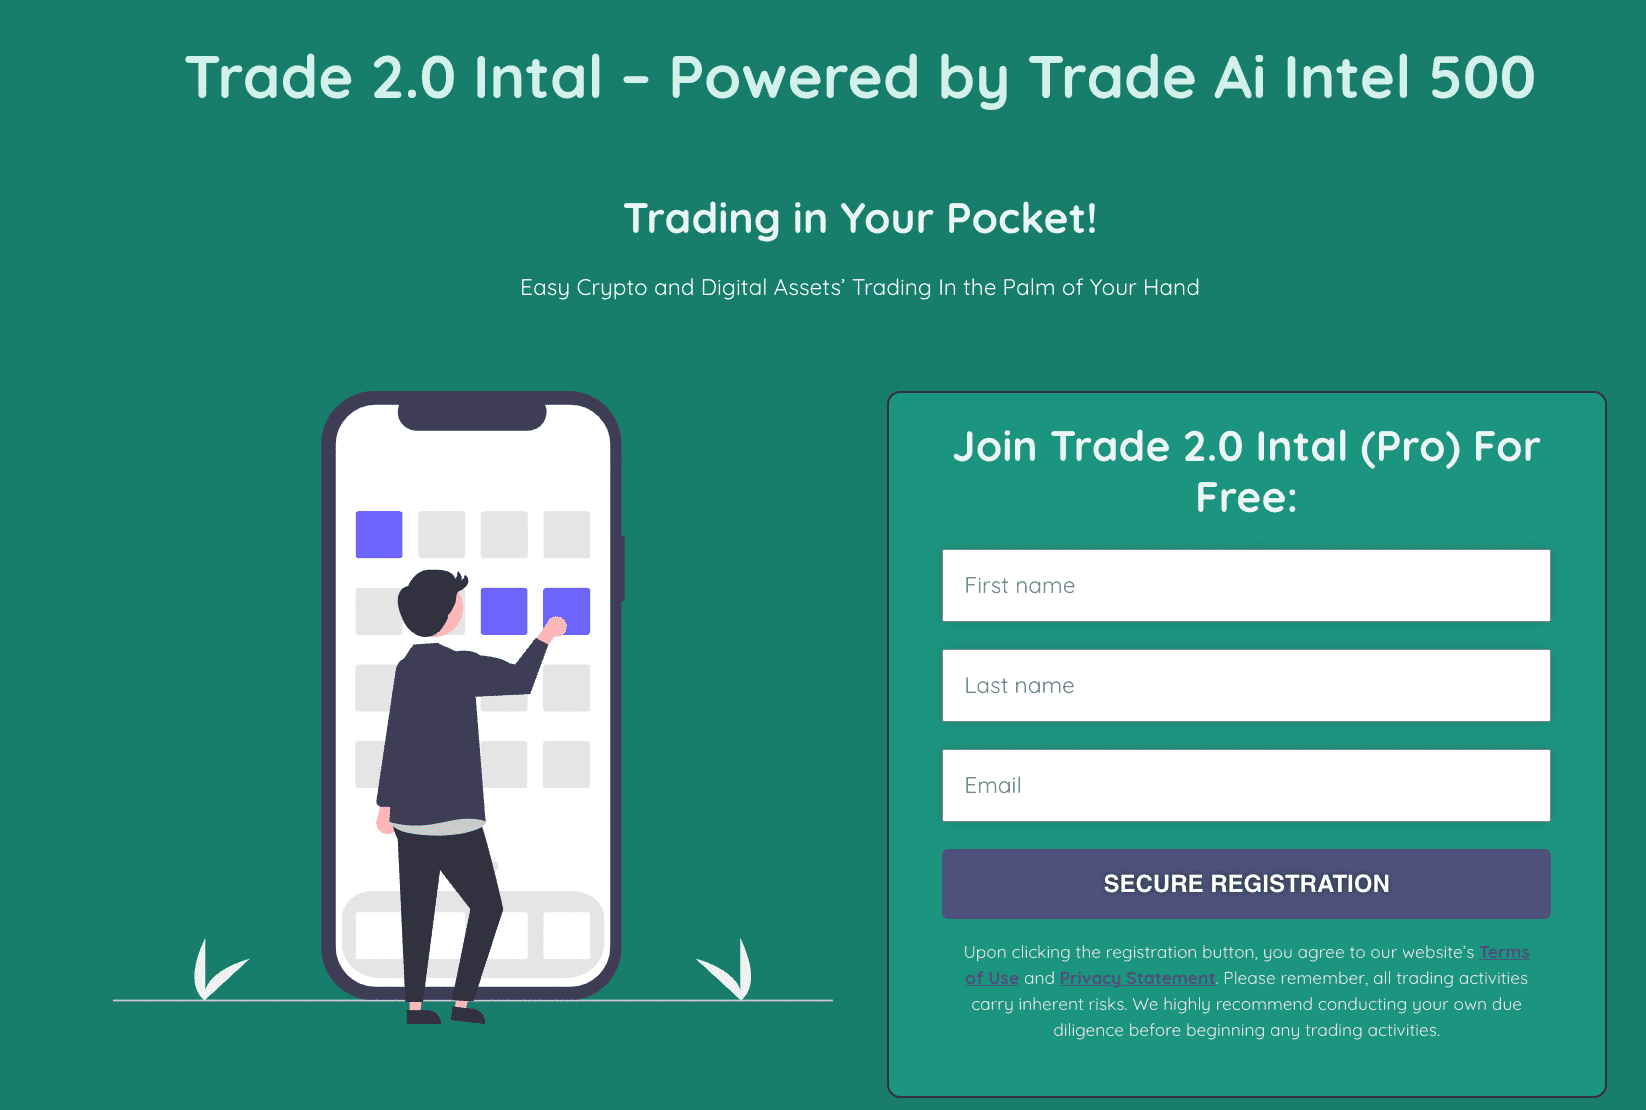 Trade 2.0 Intal – Využívá technologii Trade Ai Intel 500  